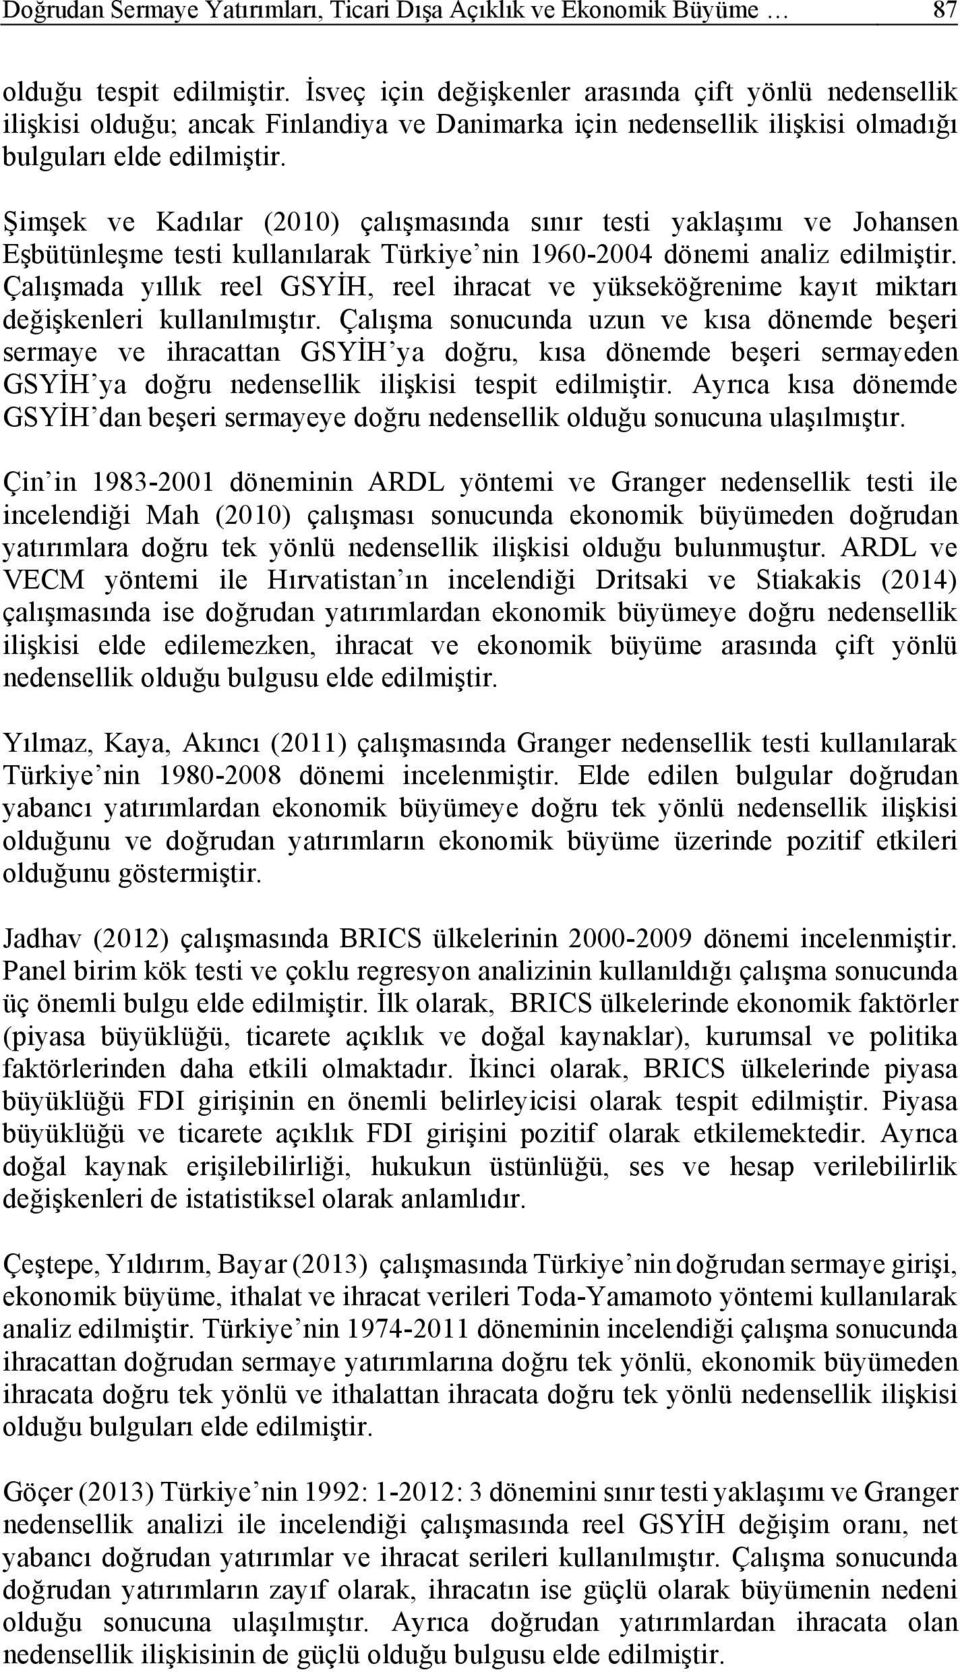 Şmşek ve Kadılar (200) çalışmasında sınır es aklaşımı ve Johansen Eşbüünleşme es kullanılarak Türke nn 960-2004 dönem analz edlmşr.